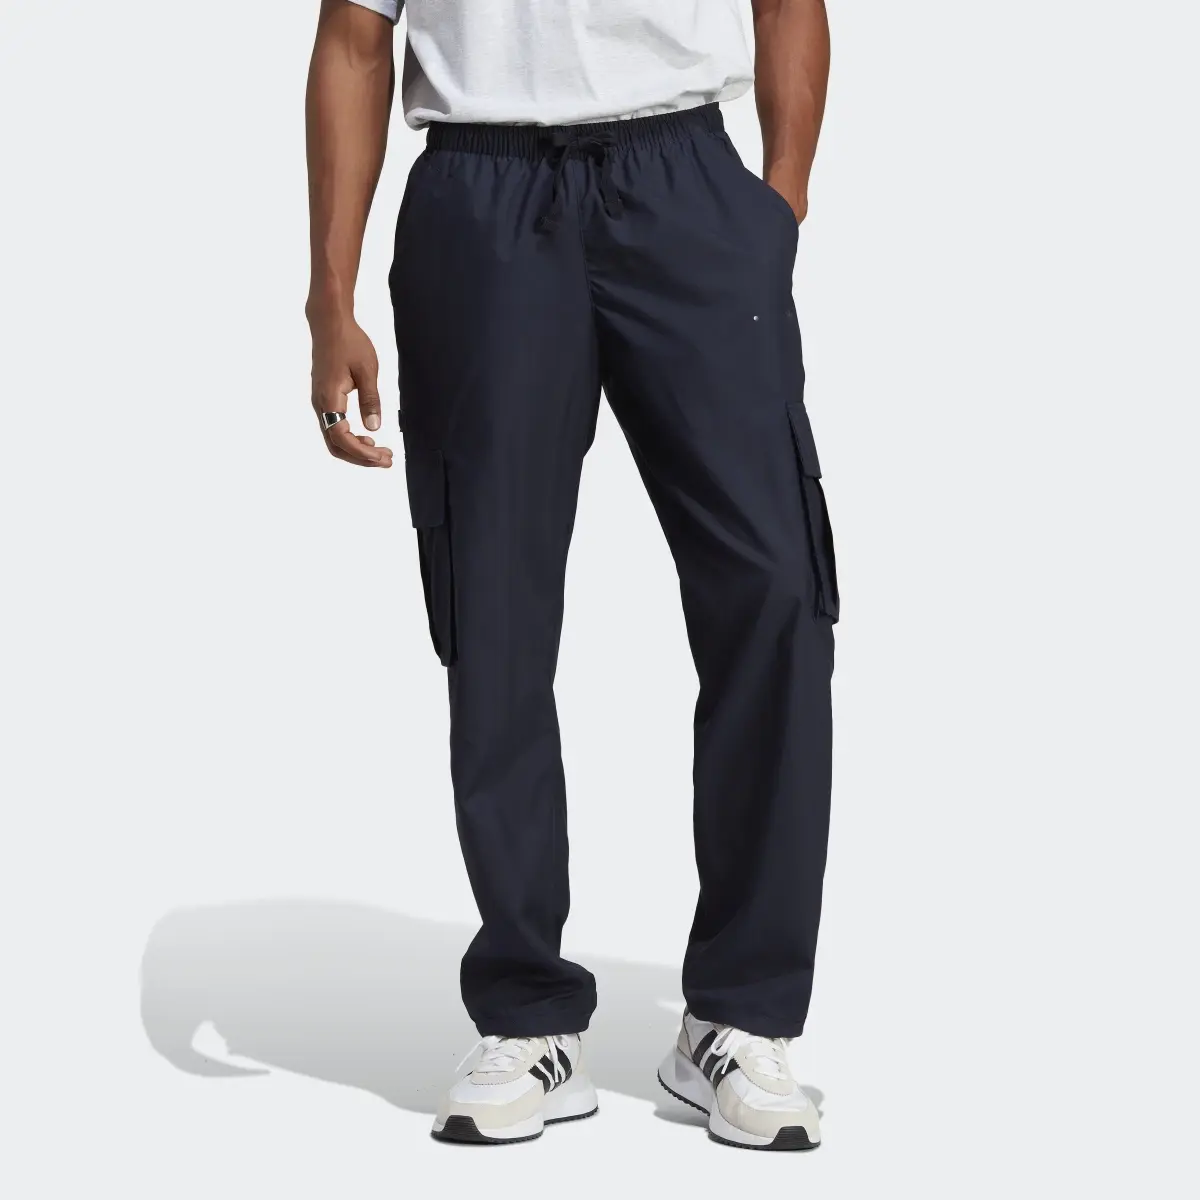 Adidas RIFTA City Boy Cargo Pants (Gender Neutral). 1